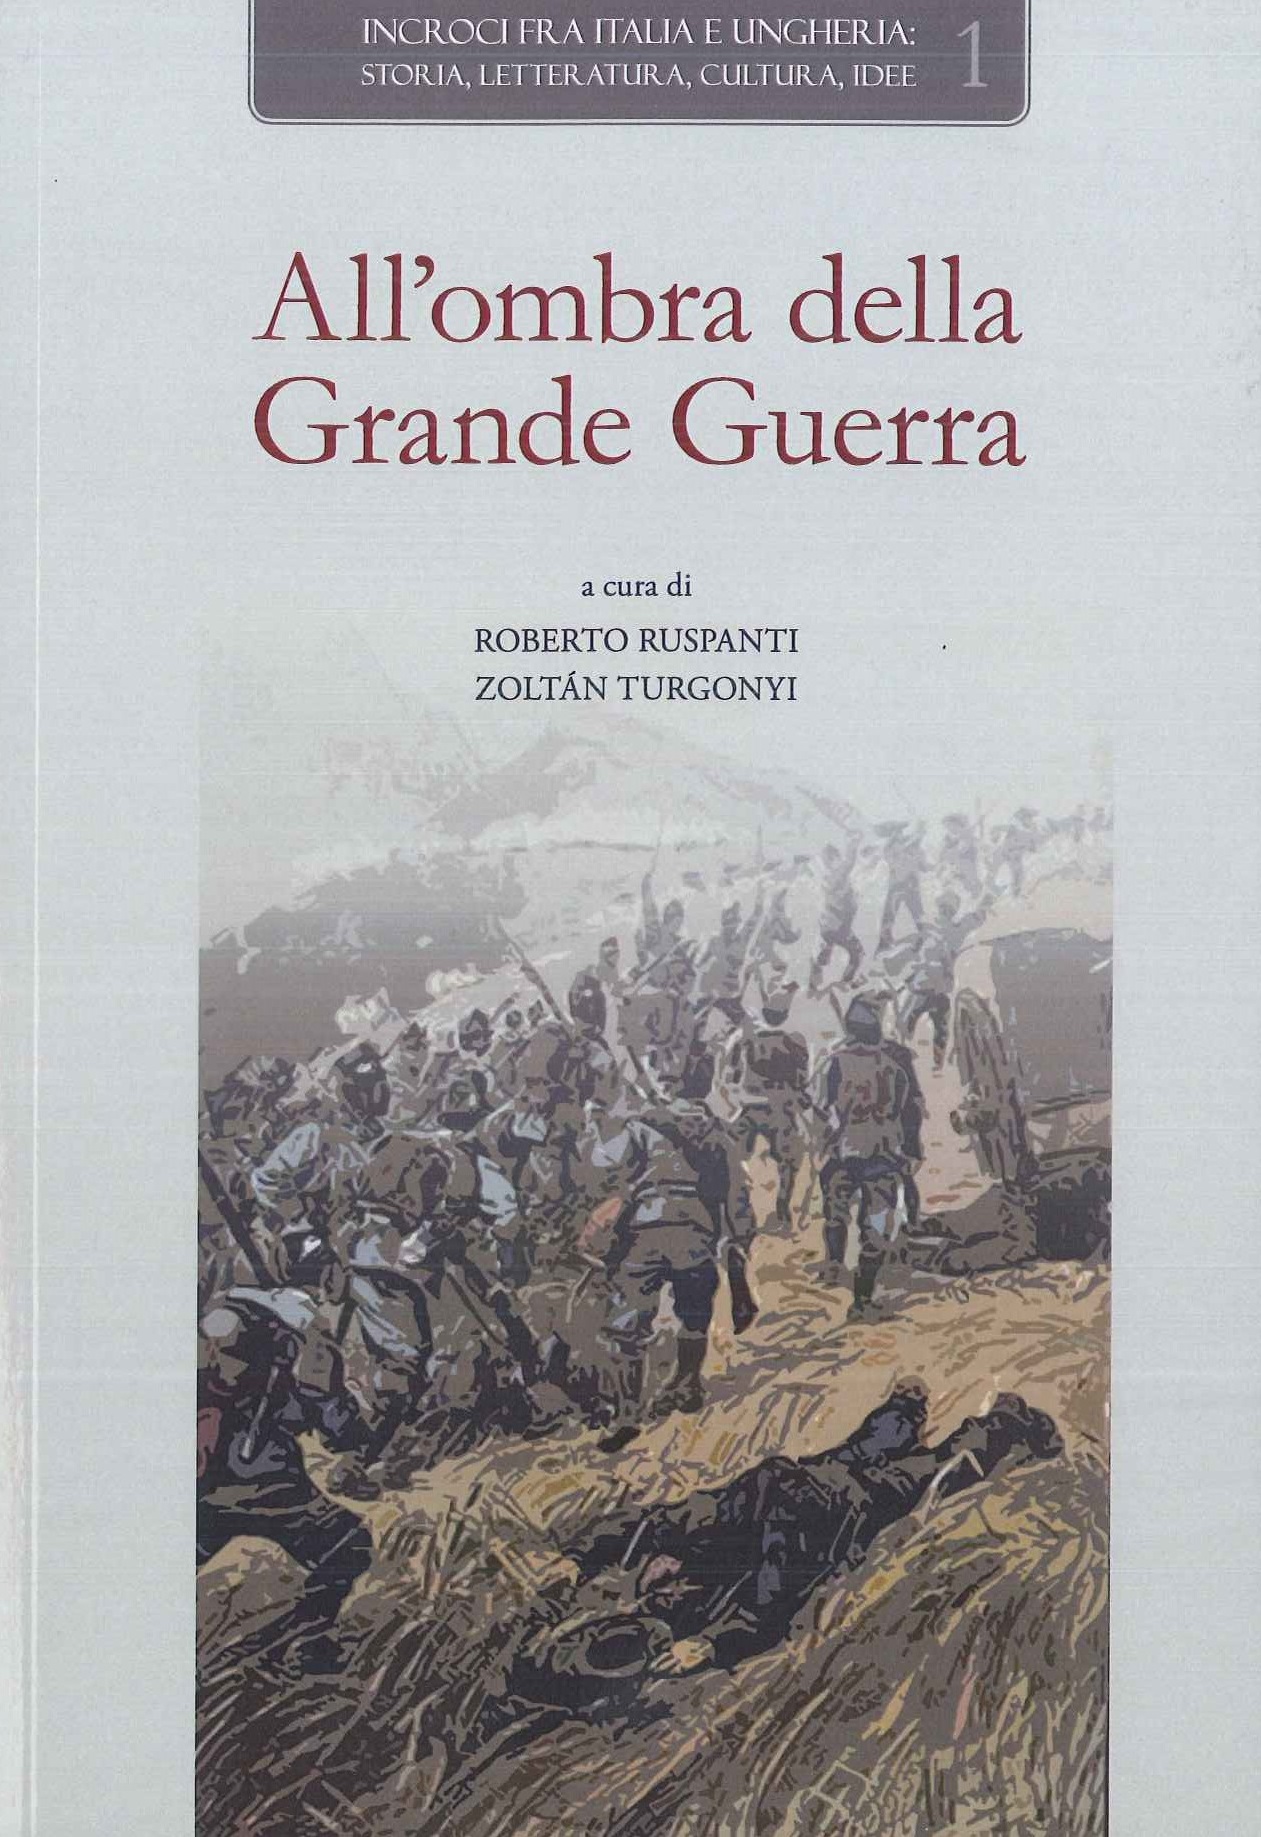 Új kötet: All'ombra della Grande Guerra